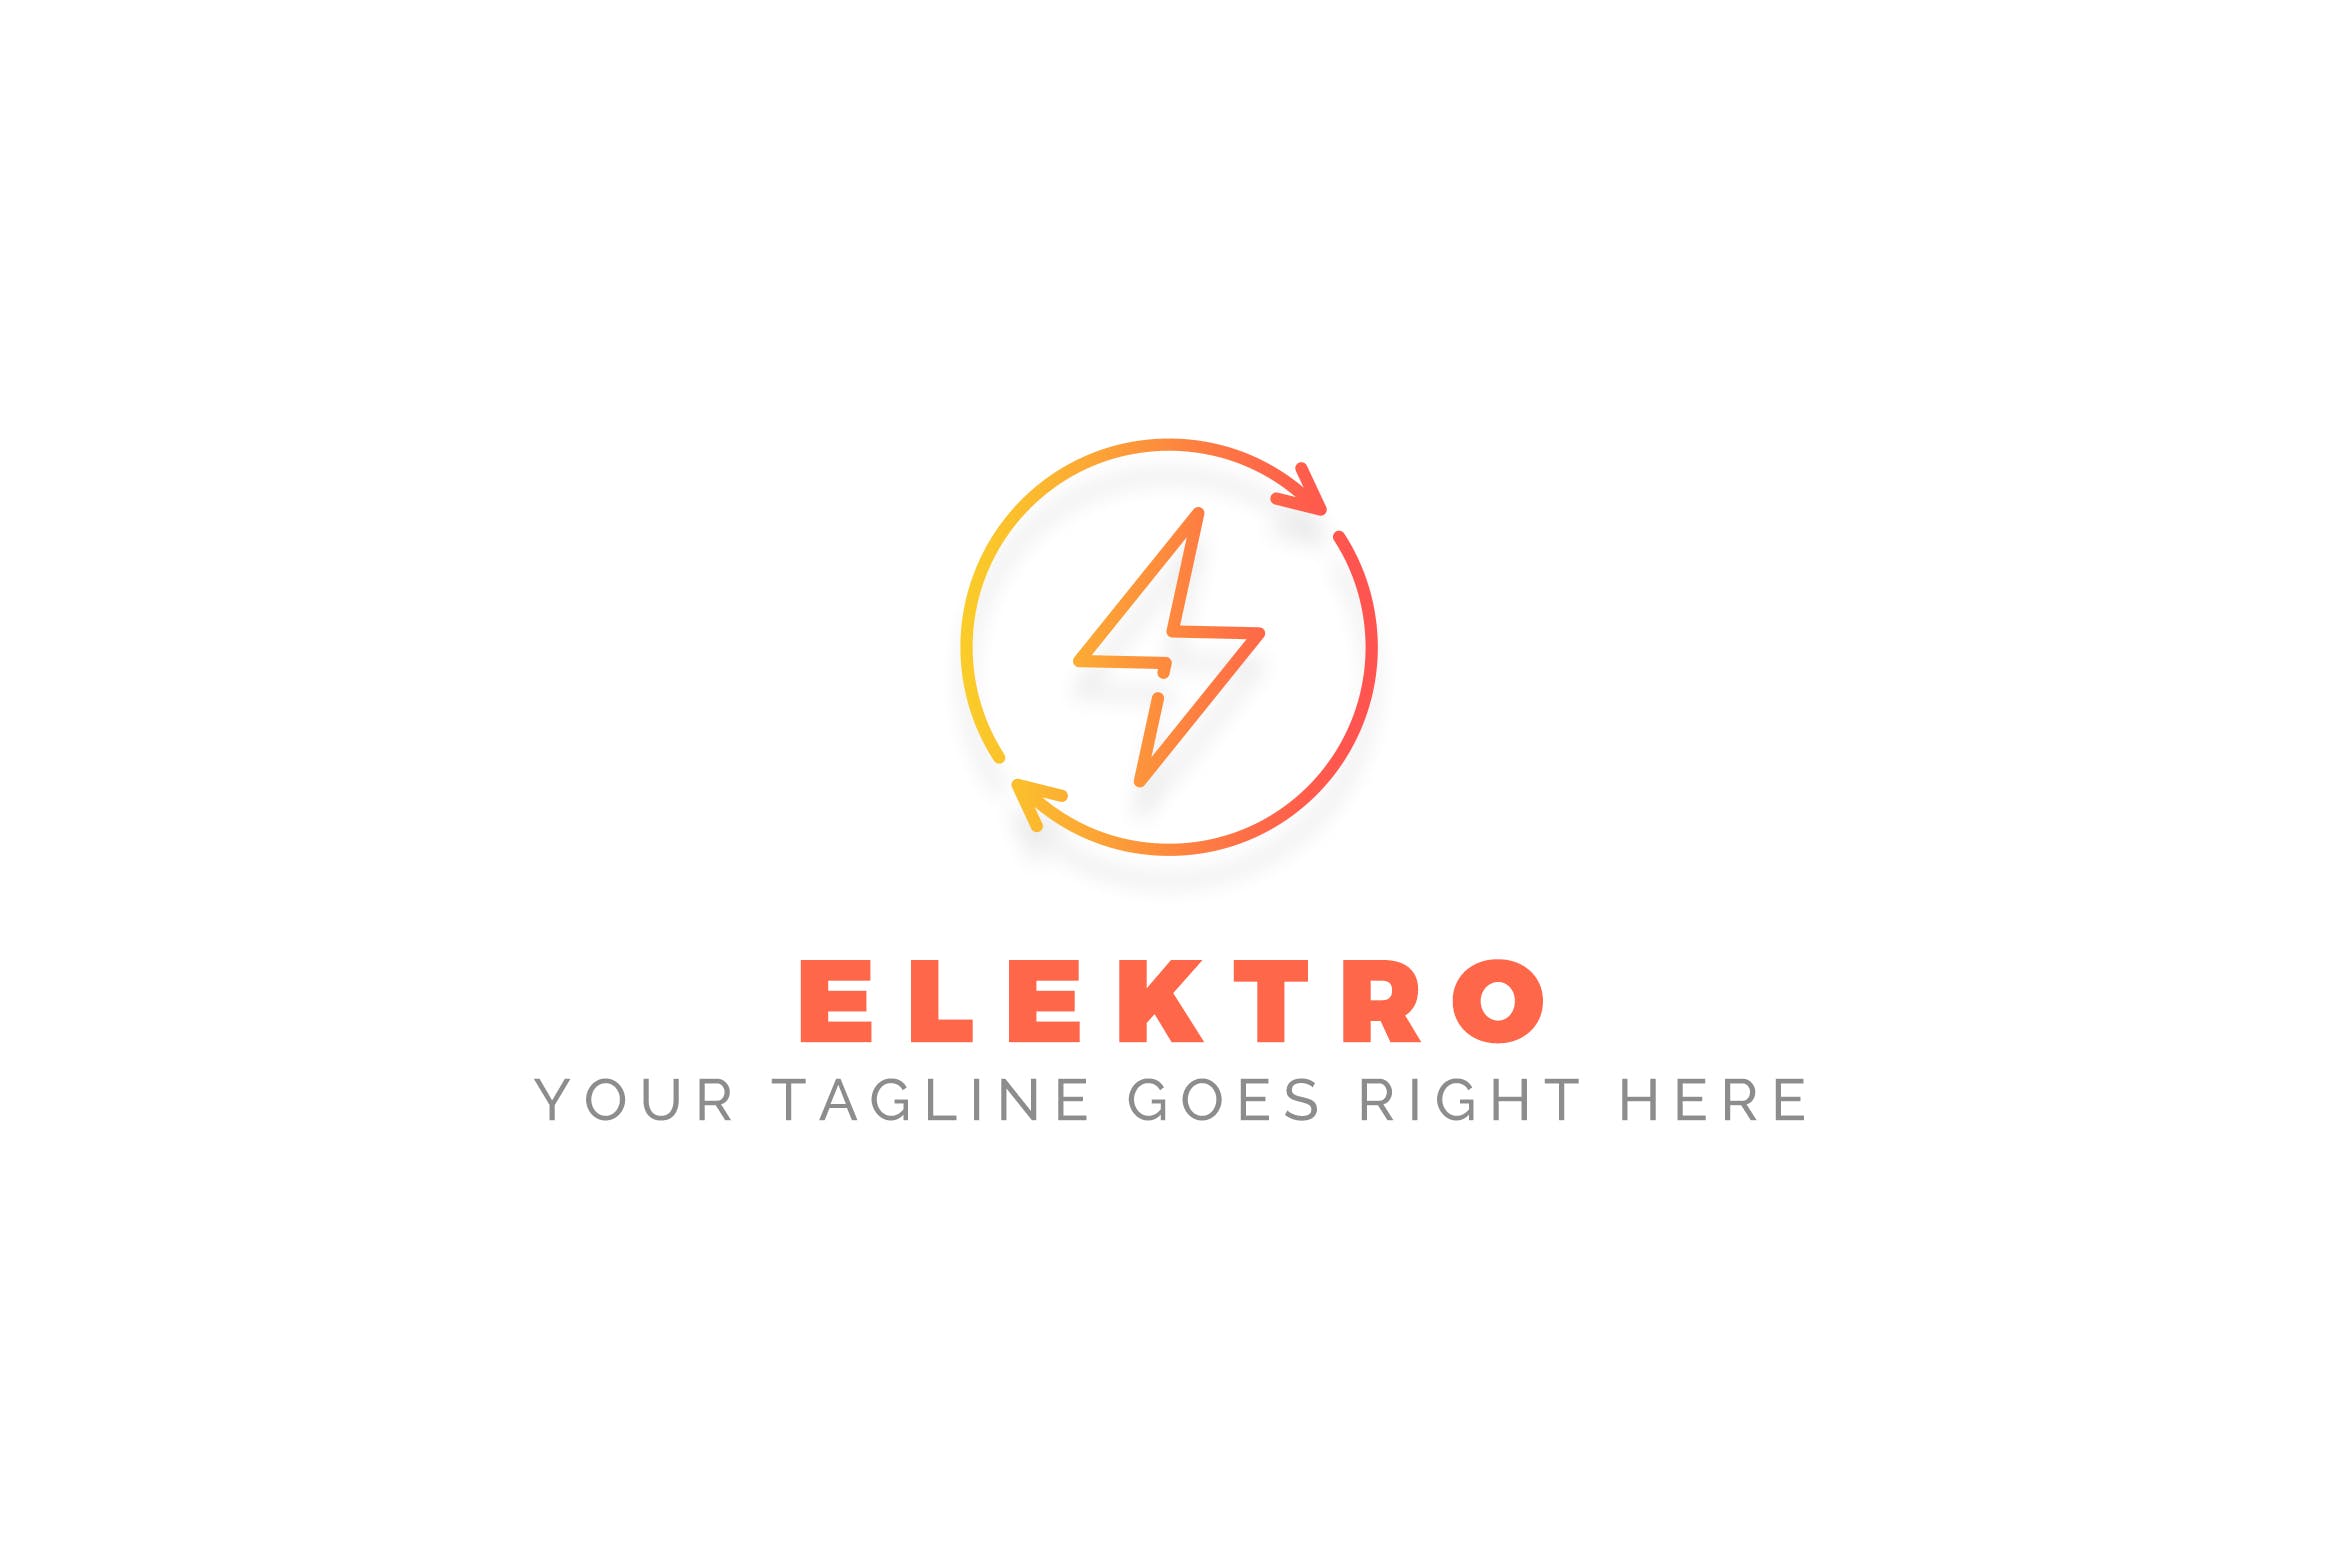 充电宝/移动电源/充电设备品牌Logo设计蚂蚁素材精选模板 Elektro – Electrician Logo Template插图